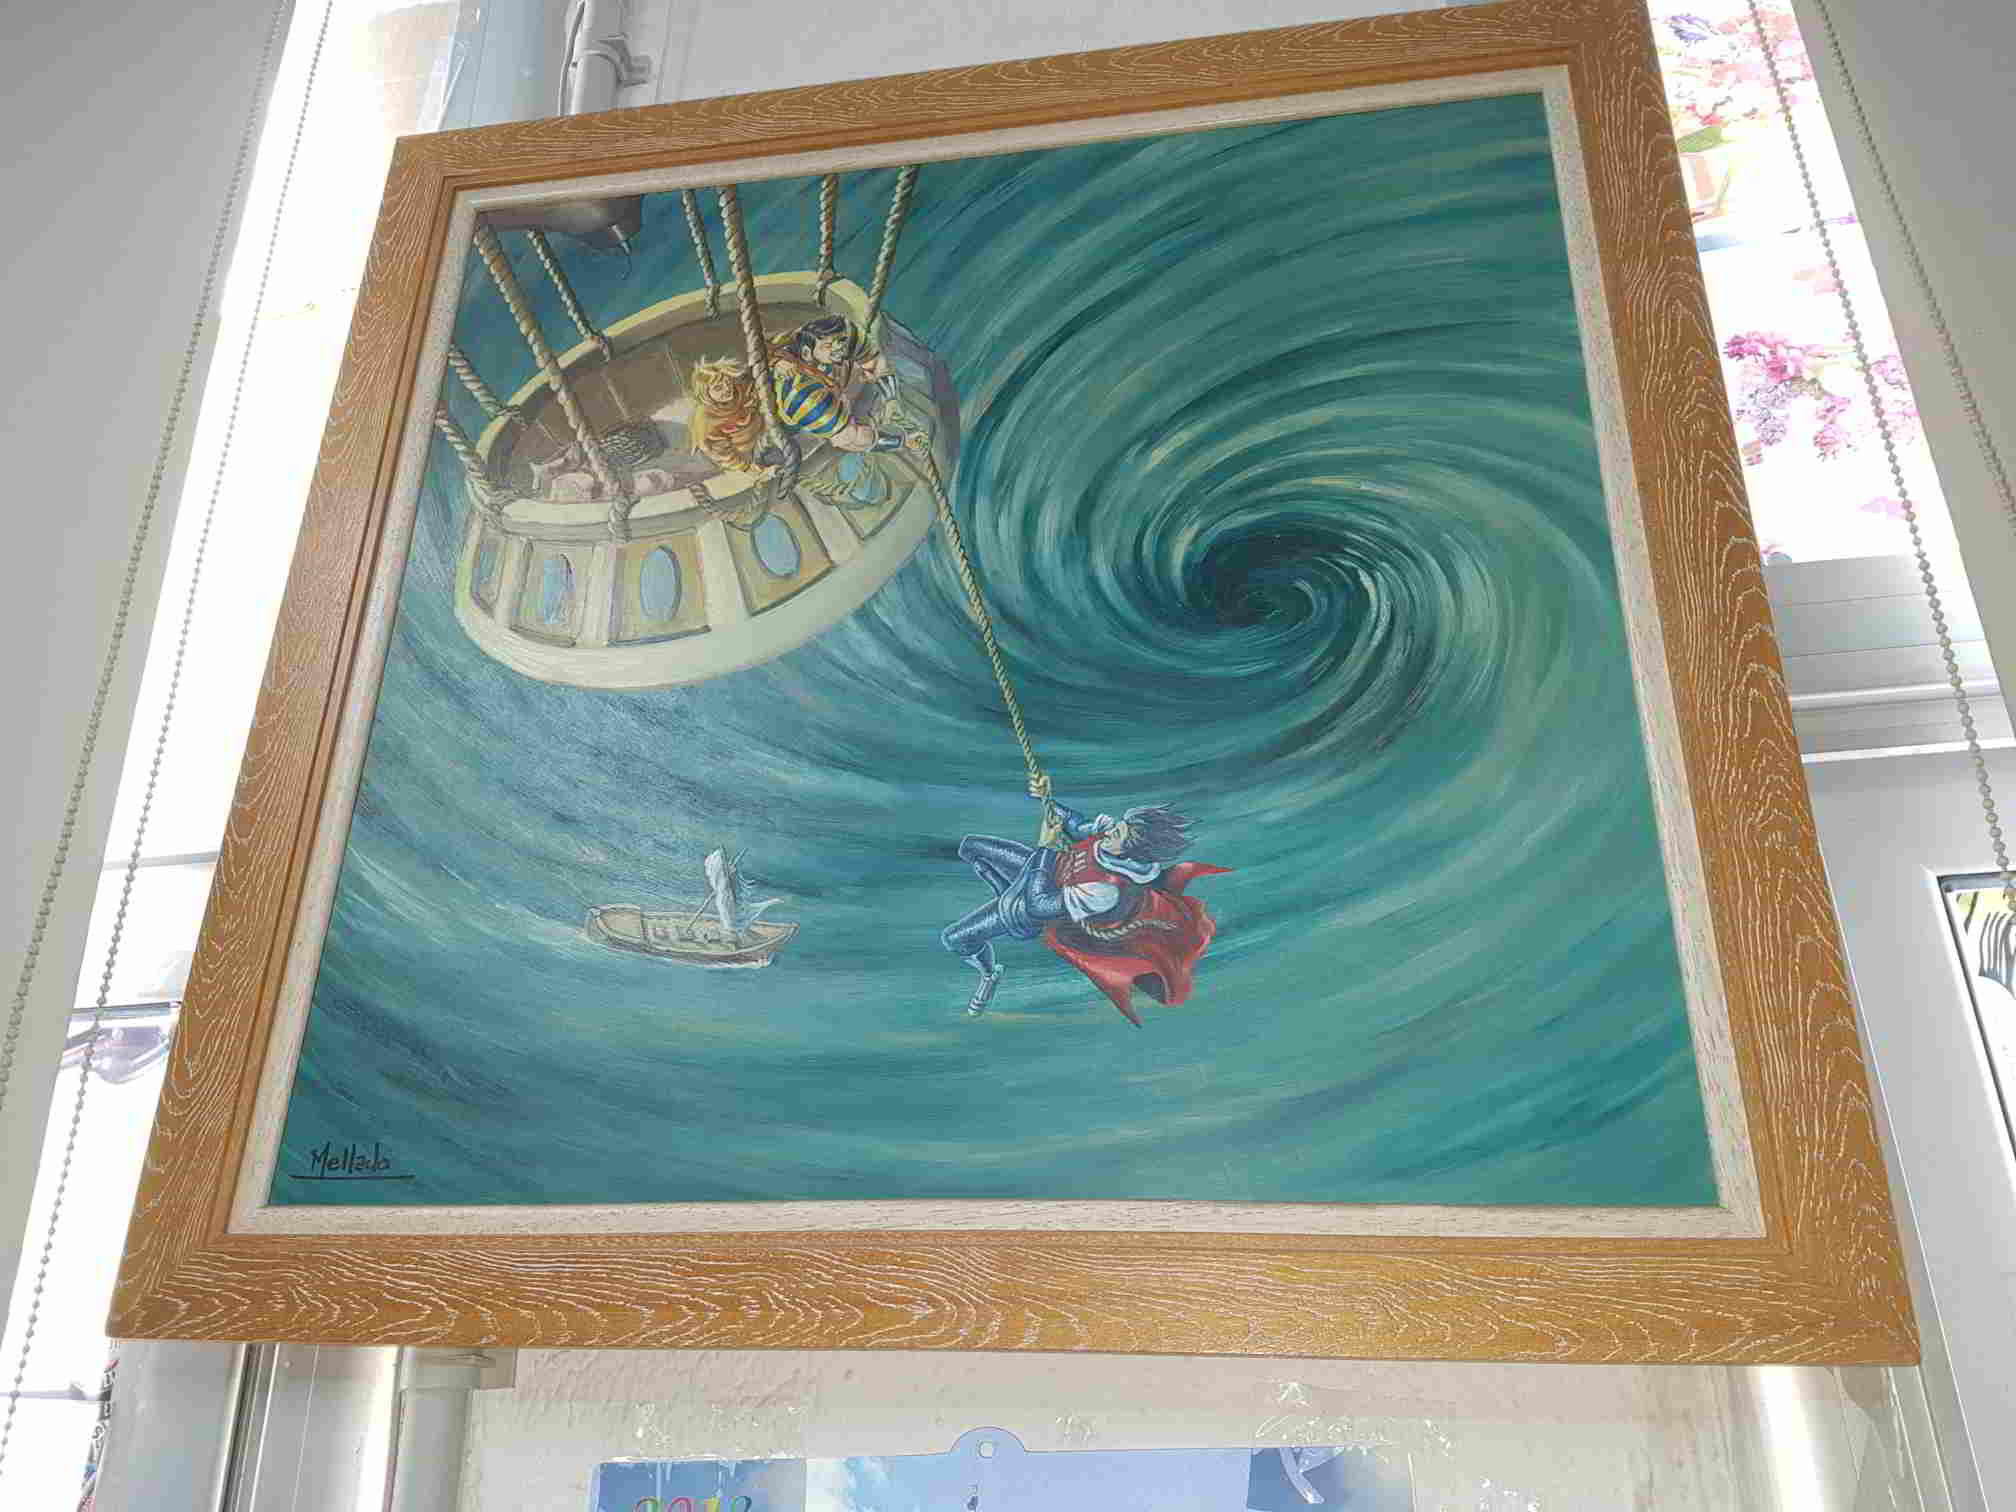 Cuadro de acuarela del Capitan Trueno, Crispin y Goliat firmado por Juan Antonio Mellado en un globo sobrevolando un remolino de agua en el mar 